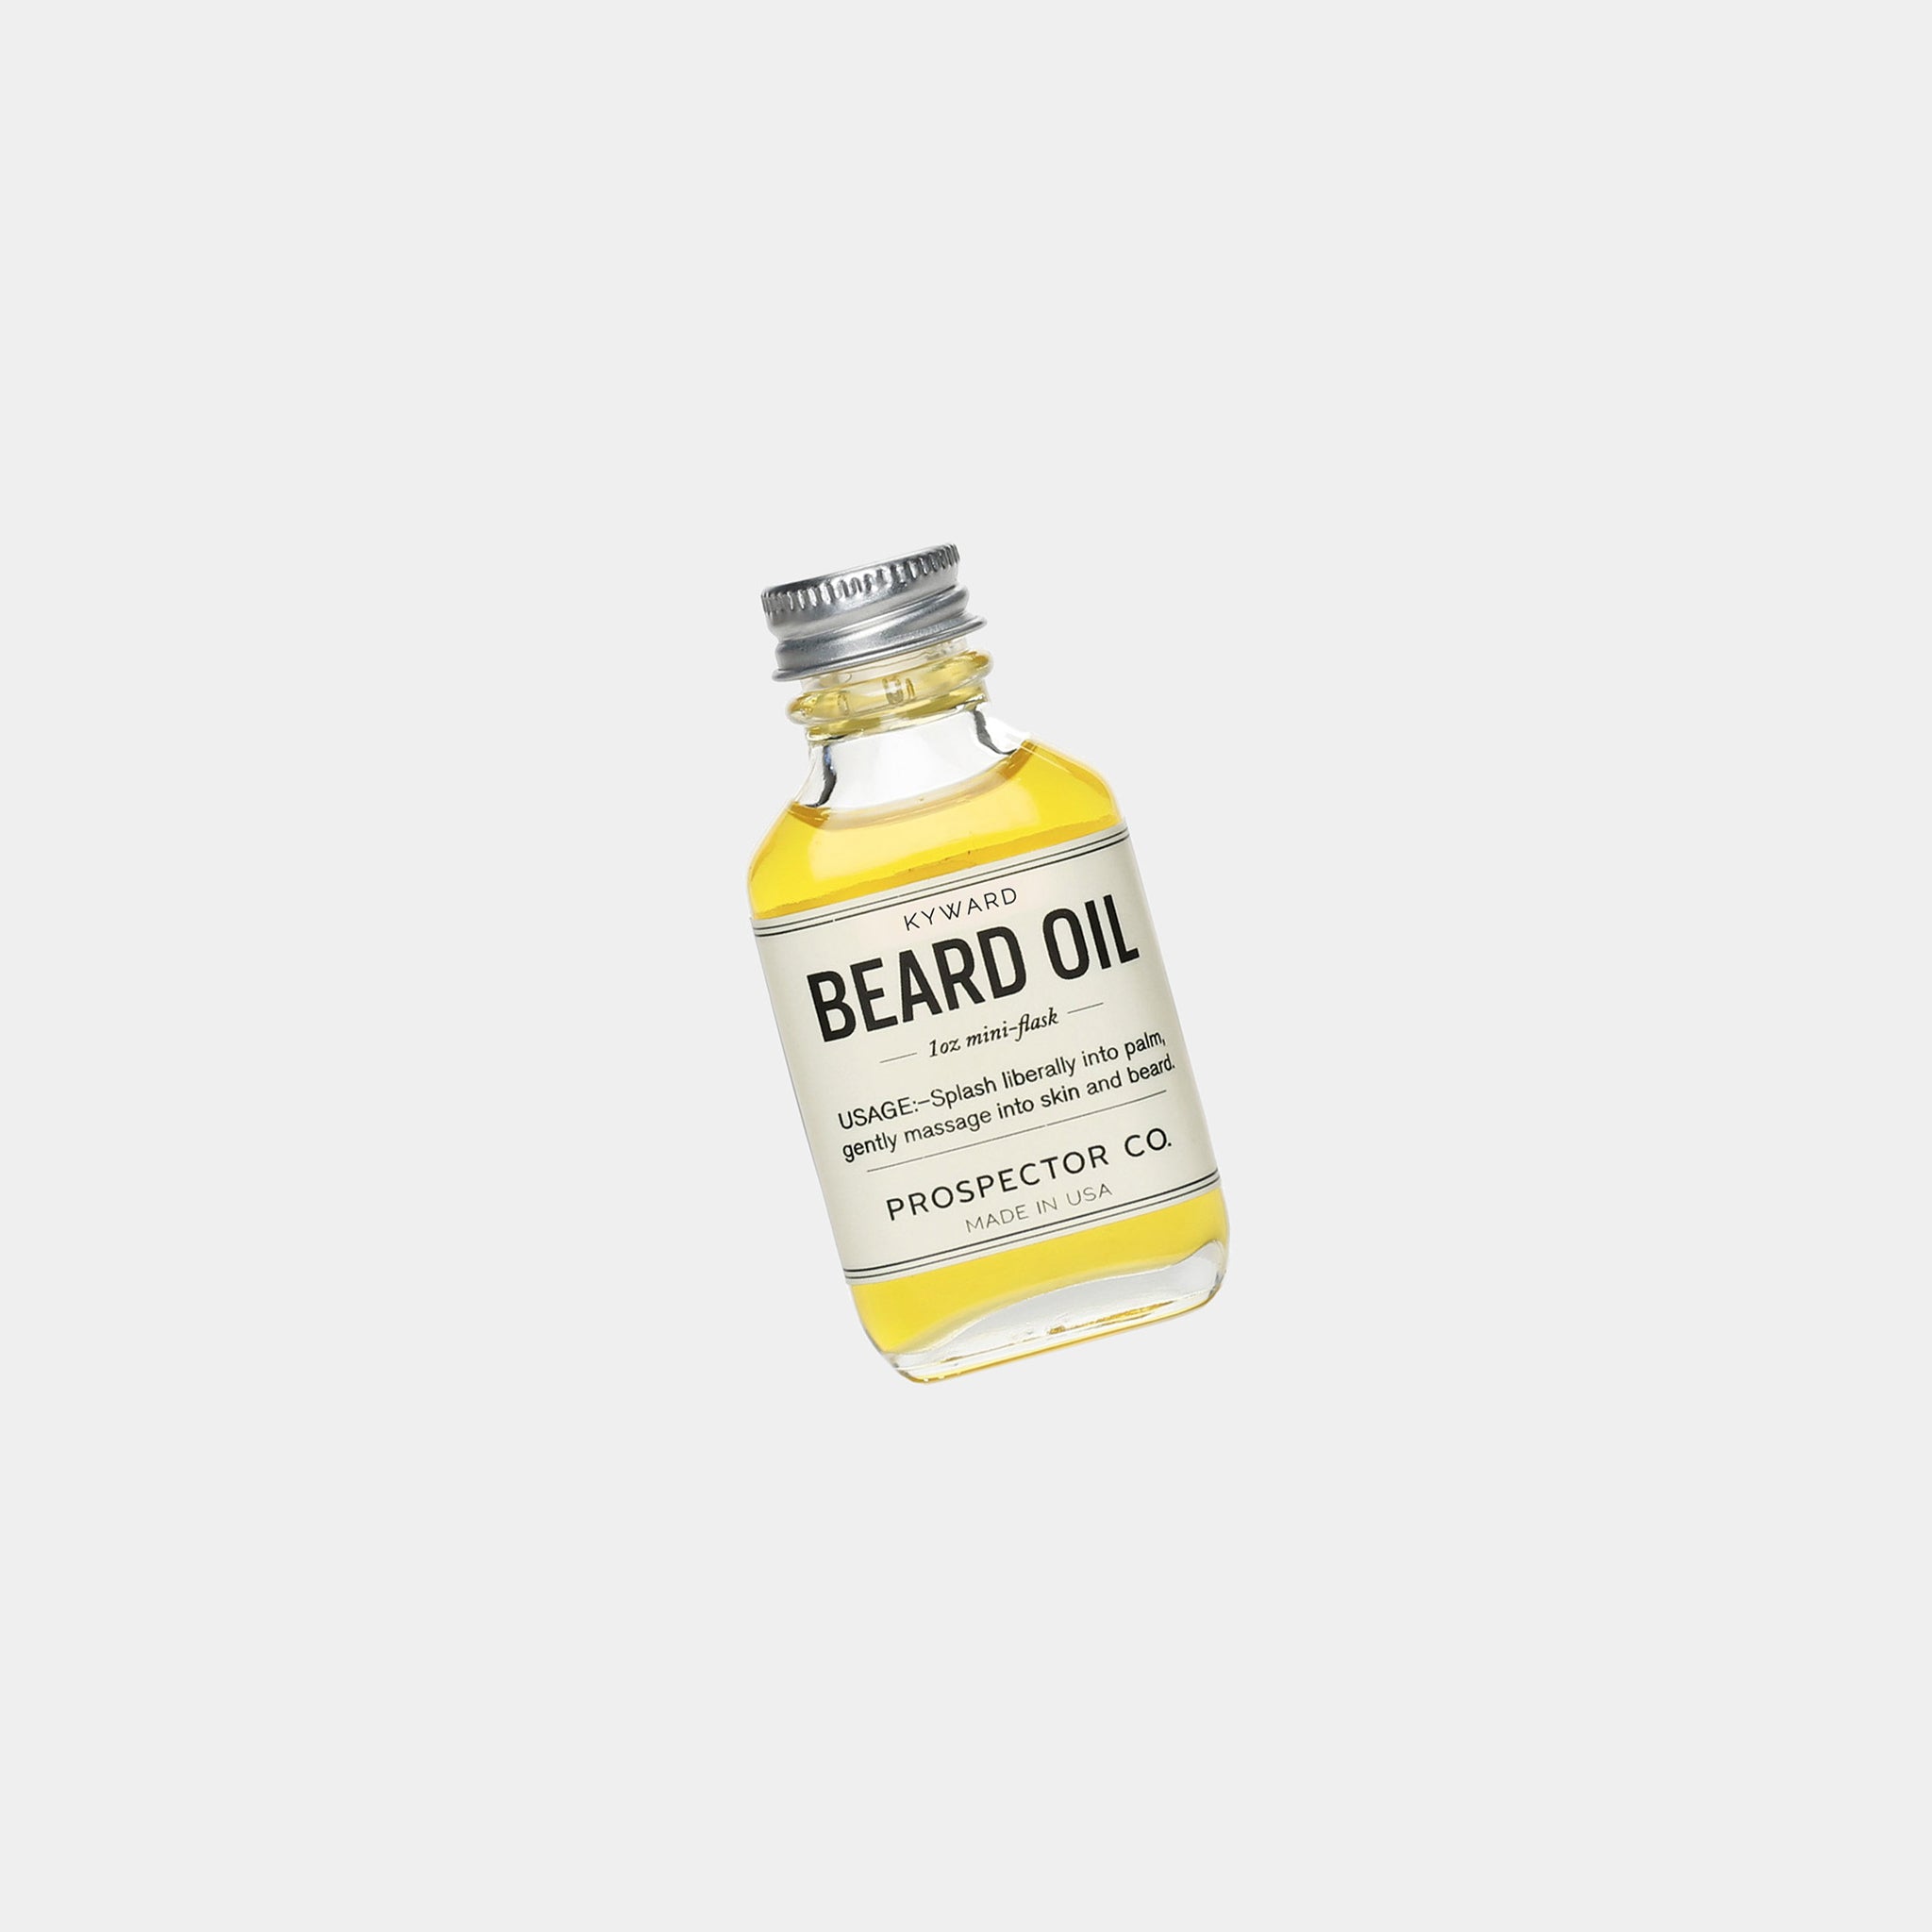 Kyward Beard Oil